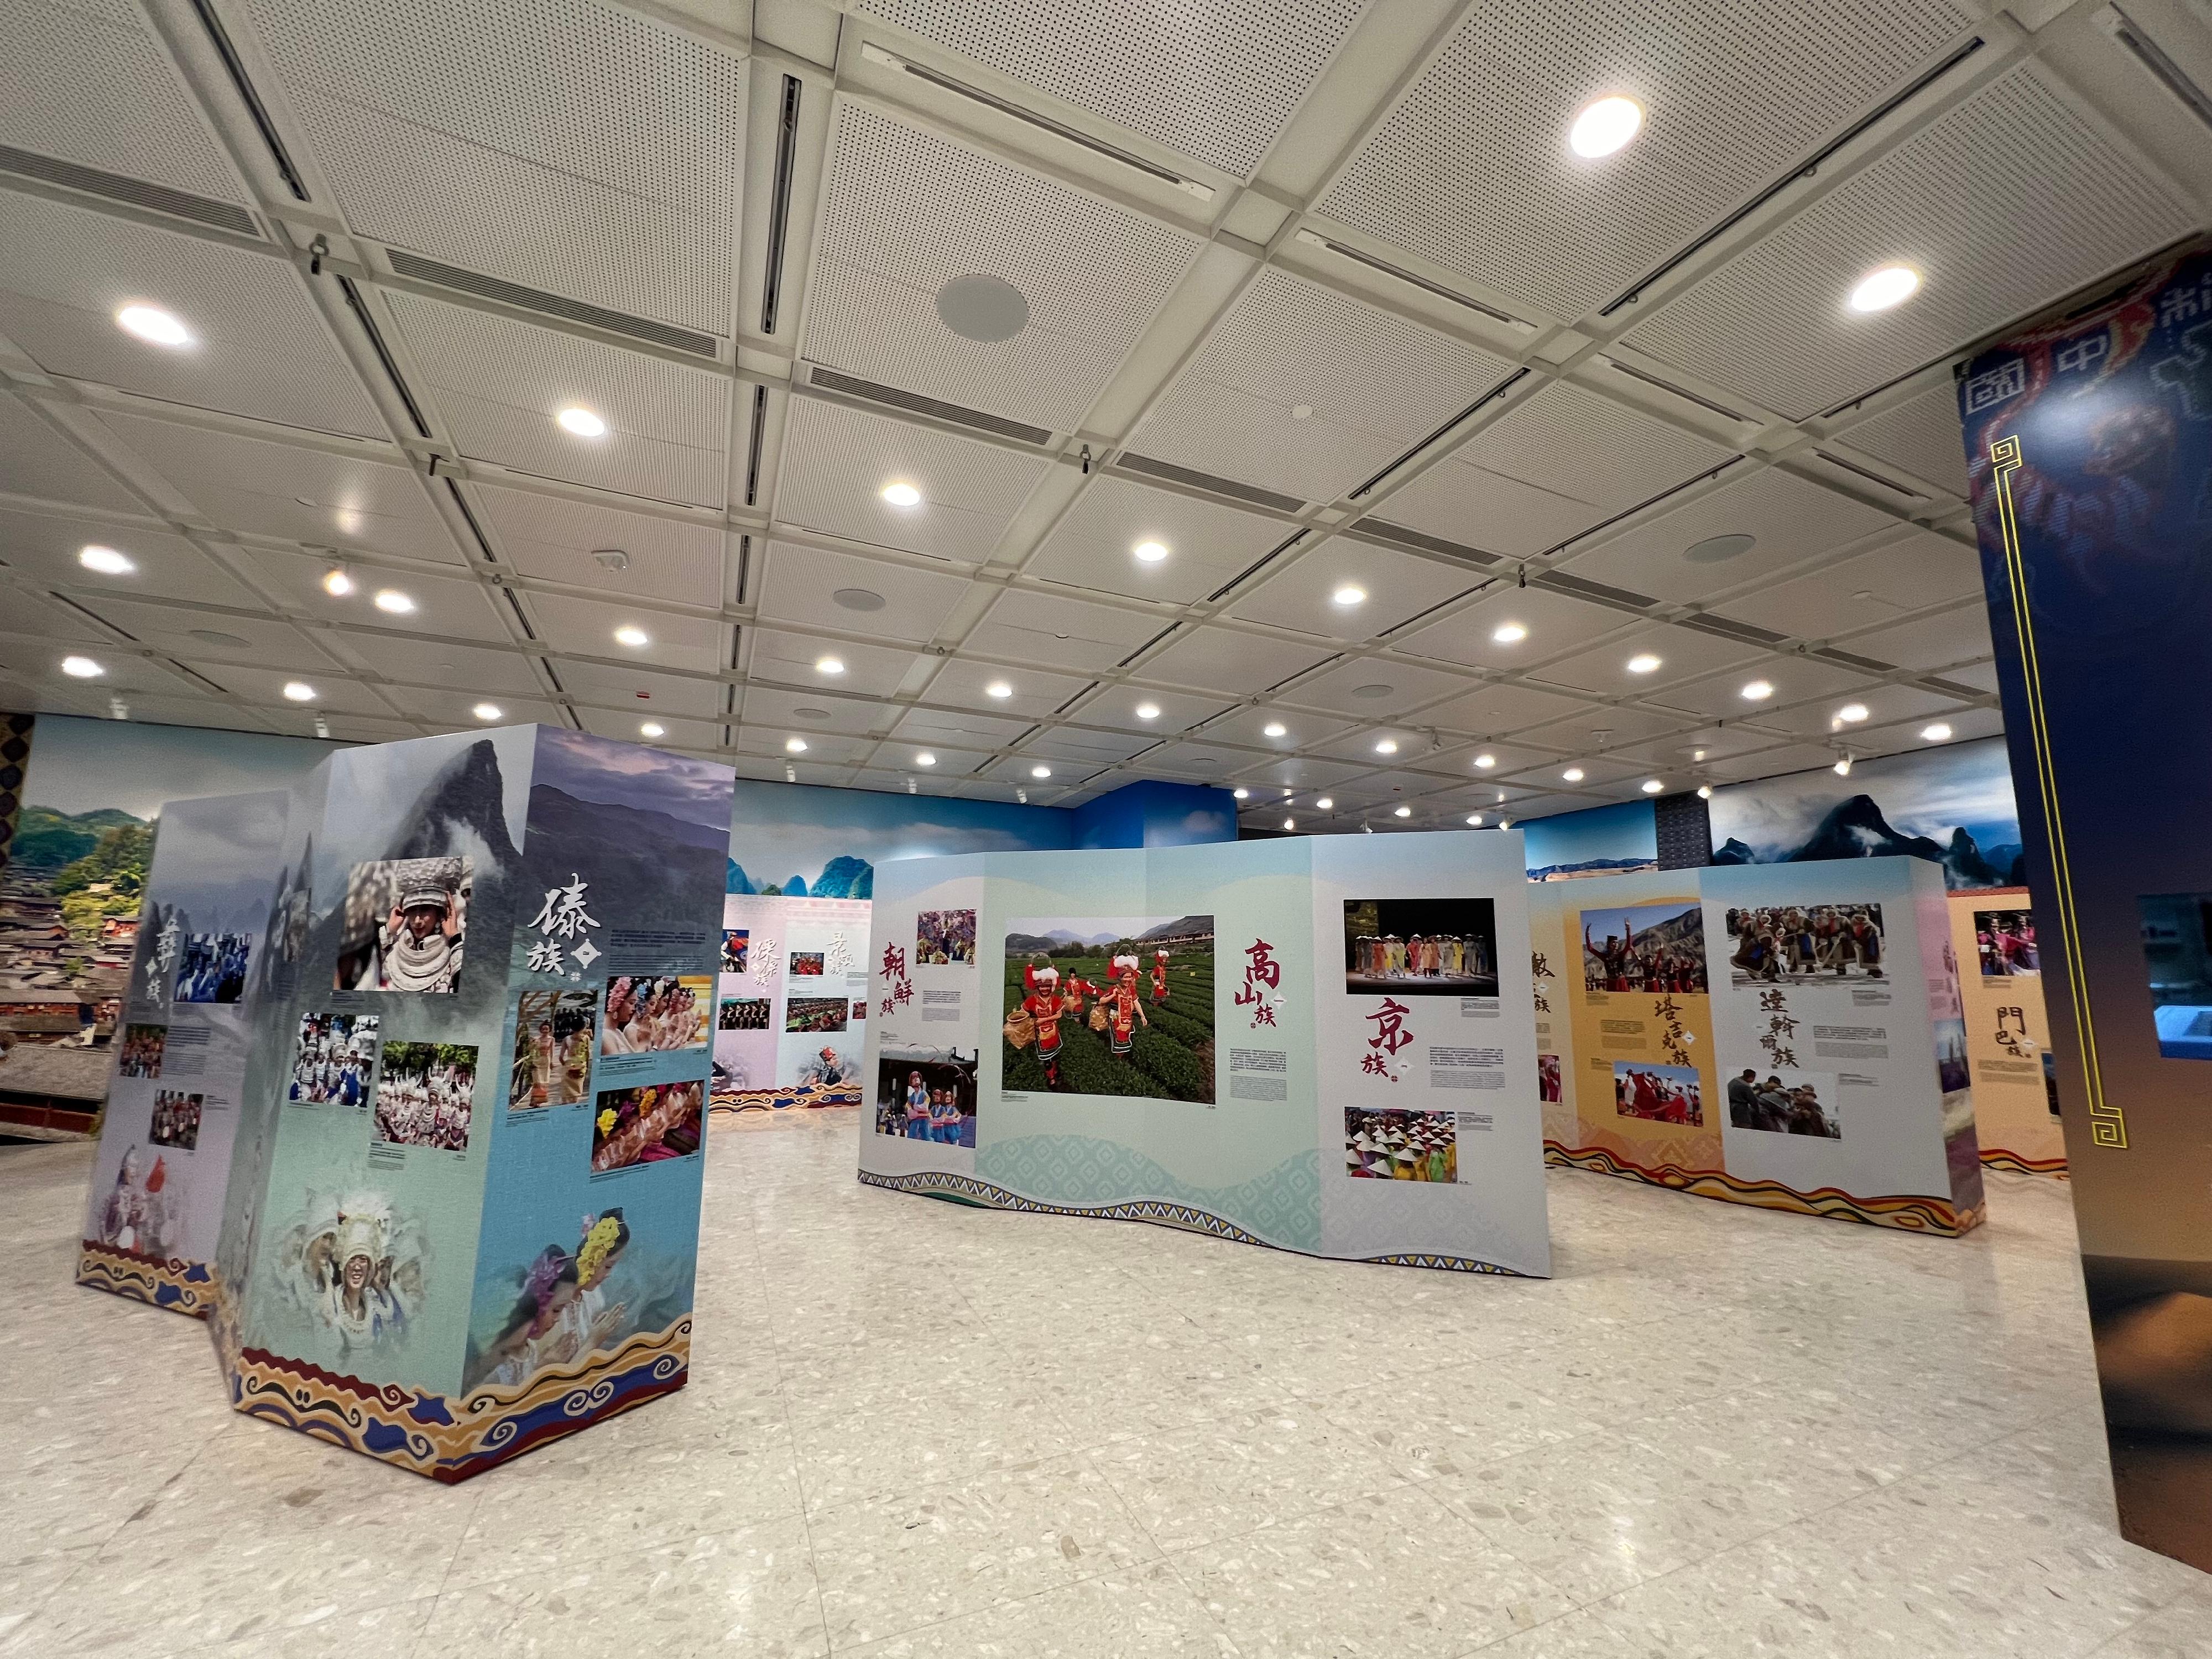 《绽艳──中华织锦耀东方》相片展由即日（六月七日）起至六月九日在沙田大会堂大堂及展览厅举行。图示展览现场。